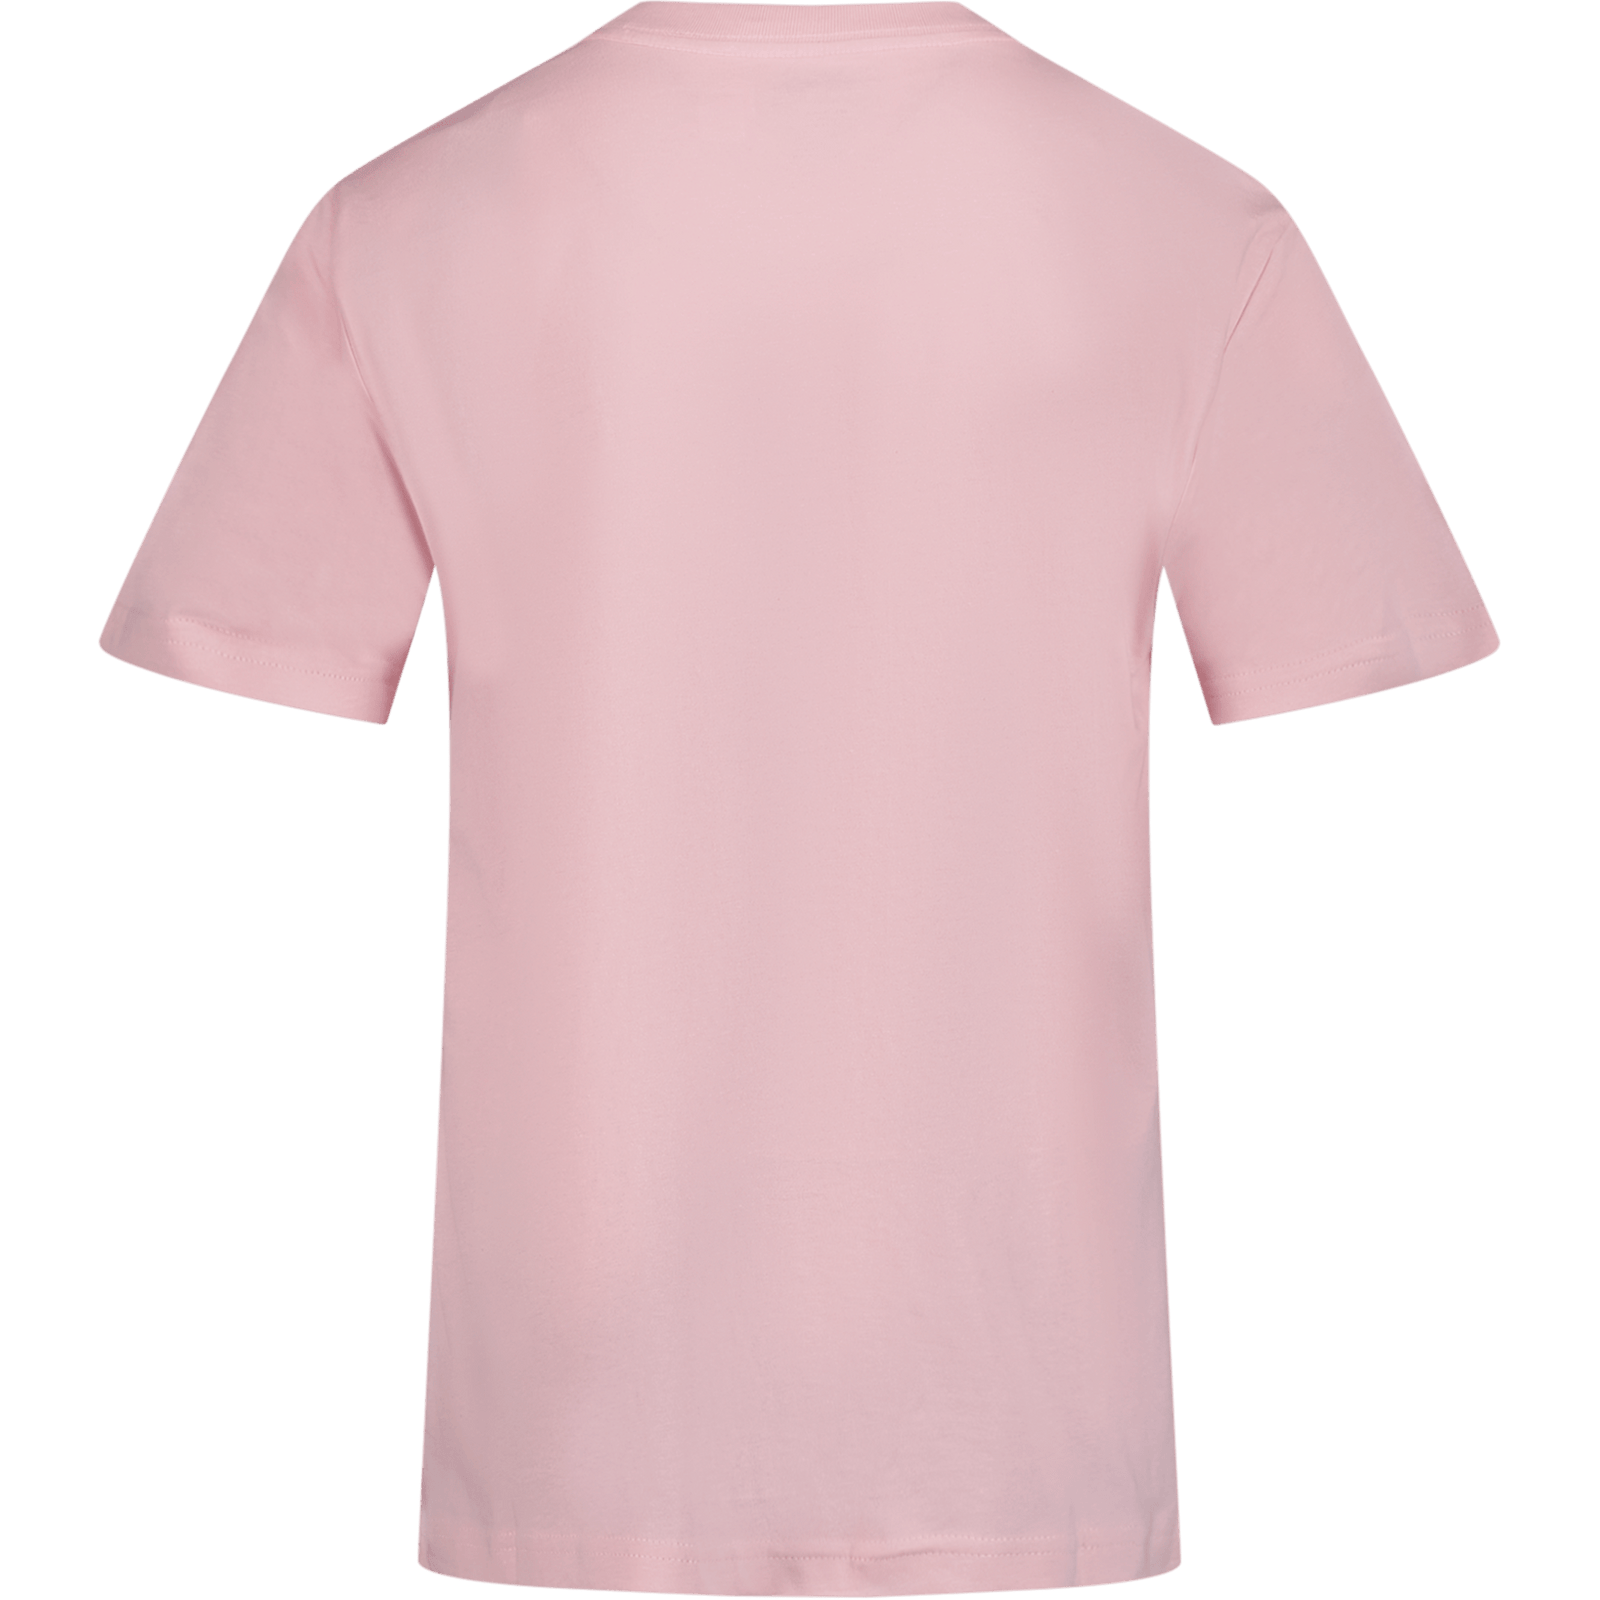 Ralph Lauren Kinder Jongens T-Shirt Licht Roze 2Y